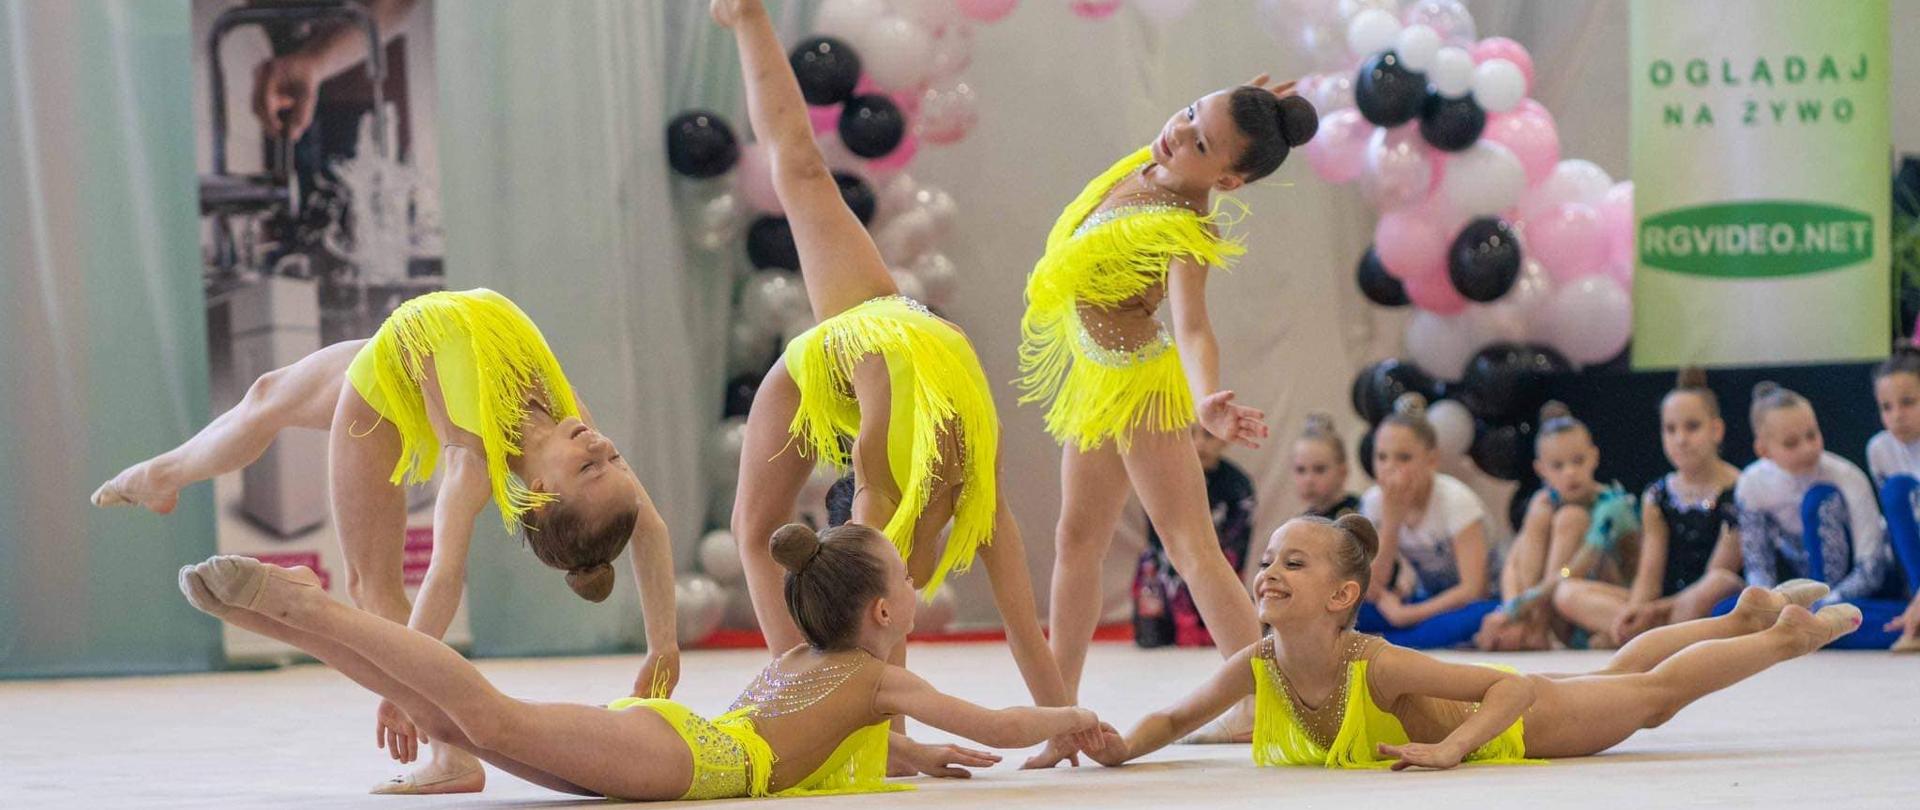 5 dziewczynek w żółtych strojach zapozowało w trakcie pokazu gimnastyki artystycznej